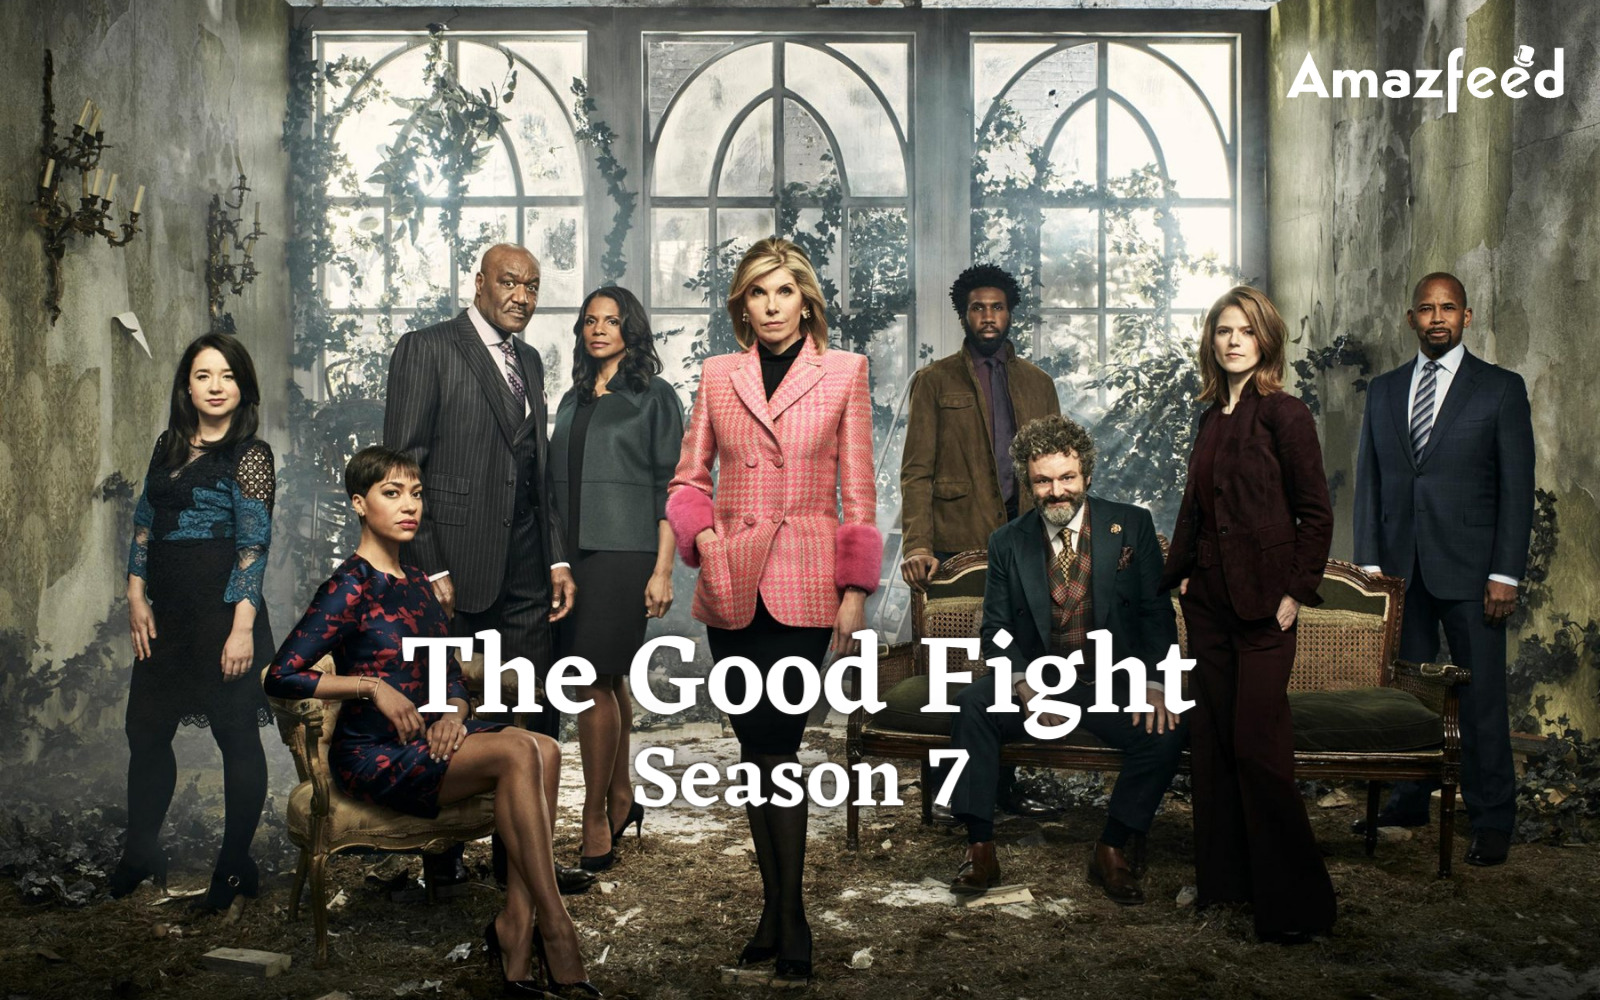 The Good Fight Season 7